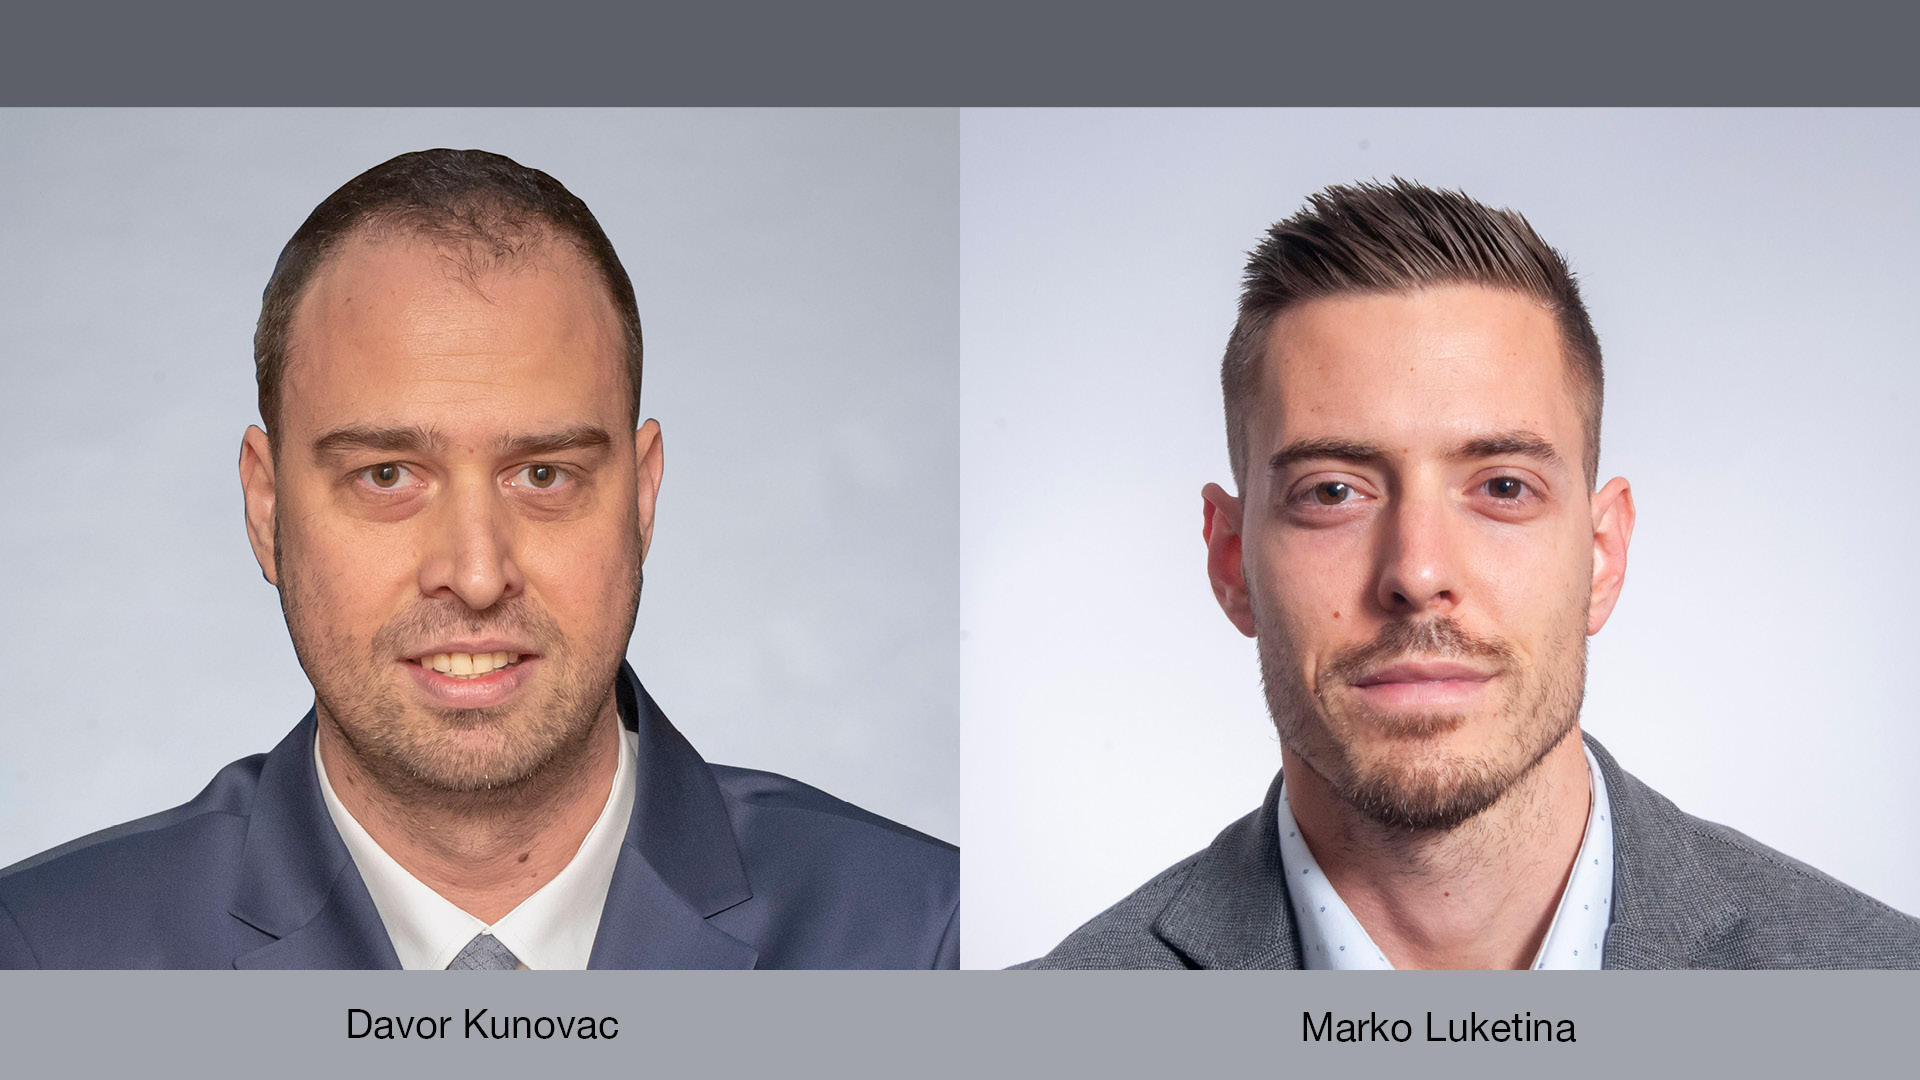 Davor Kunovac and Marko Luketina